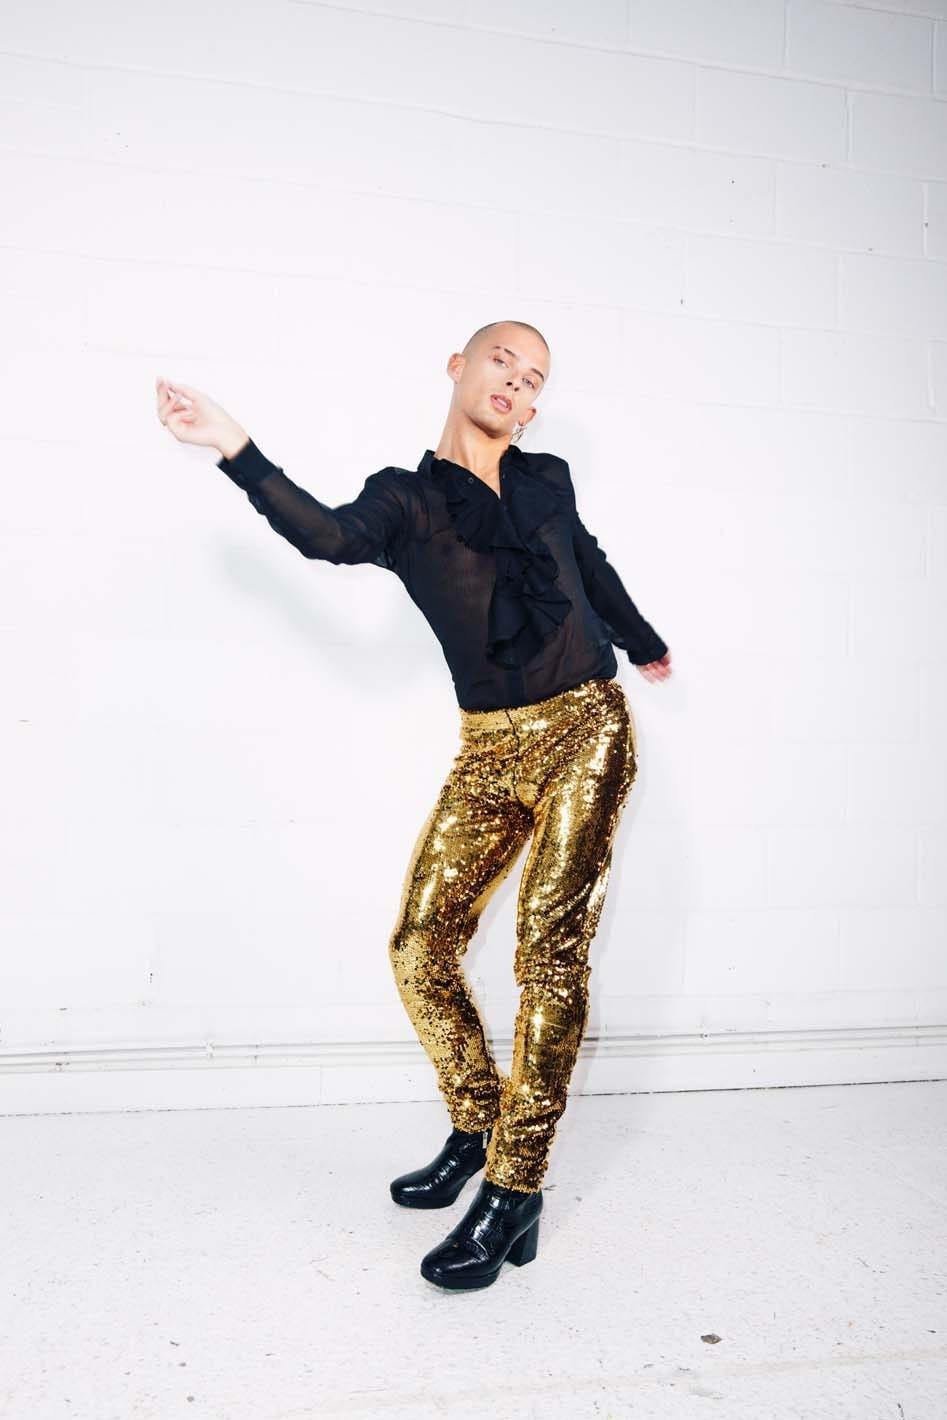 Gold Sequin Pants Sequin Pants Gold Pants Gold Glitter Pants Gold Sparkle  Pants 